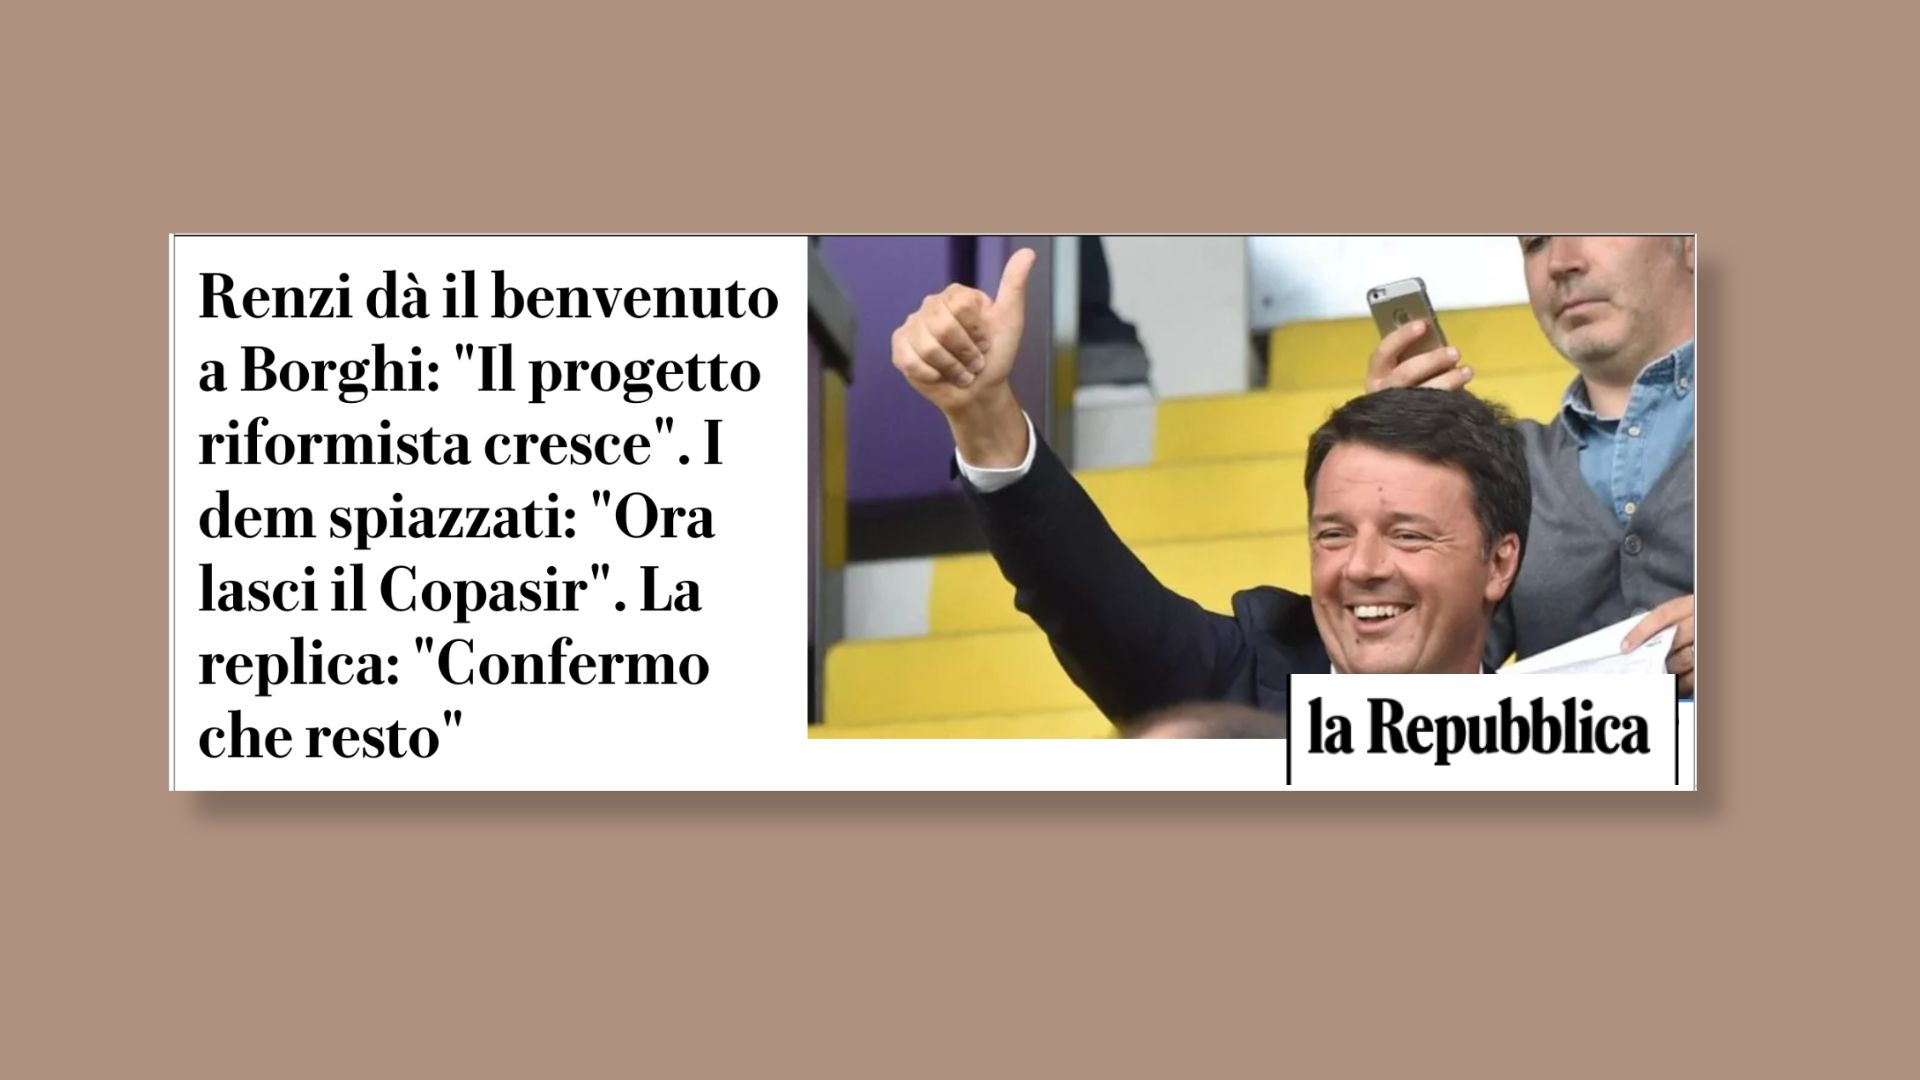 Renzi dà il benvenuto a Borghi: “Il progetto riformista cresce”. I dem spiazzati: “Ora lasci il Copasir”. La replica: “Confermo che resto”